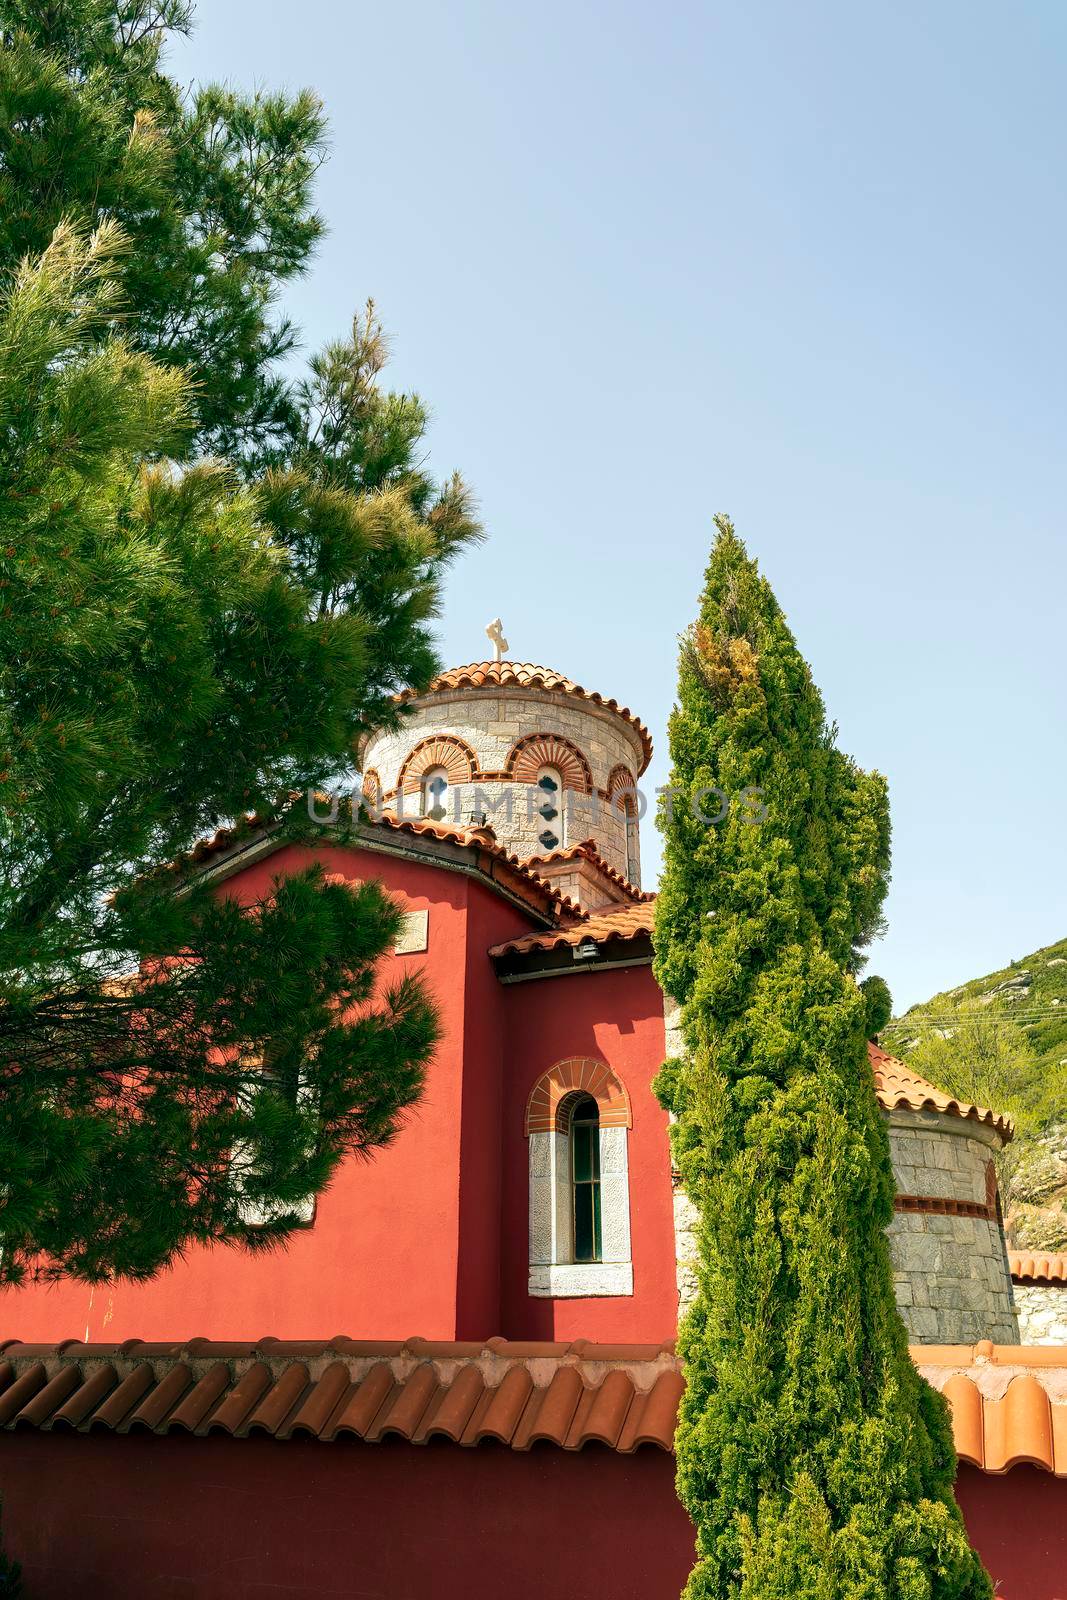 Agiou panteleimonous monastery in Penteli, Greece by ankarb